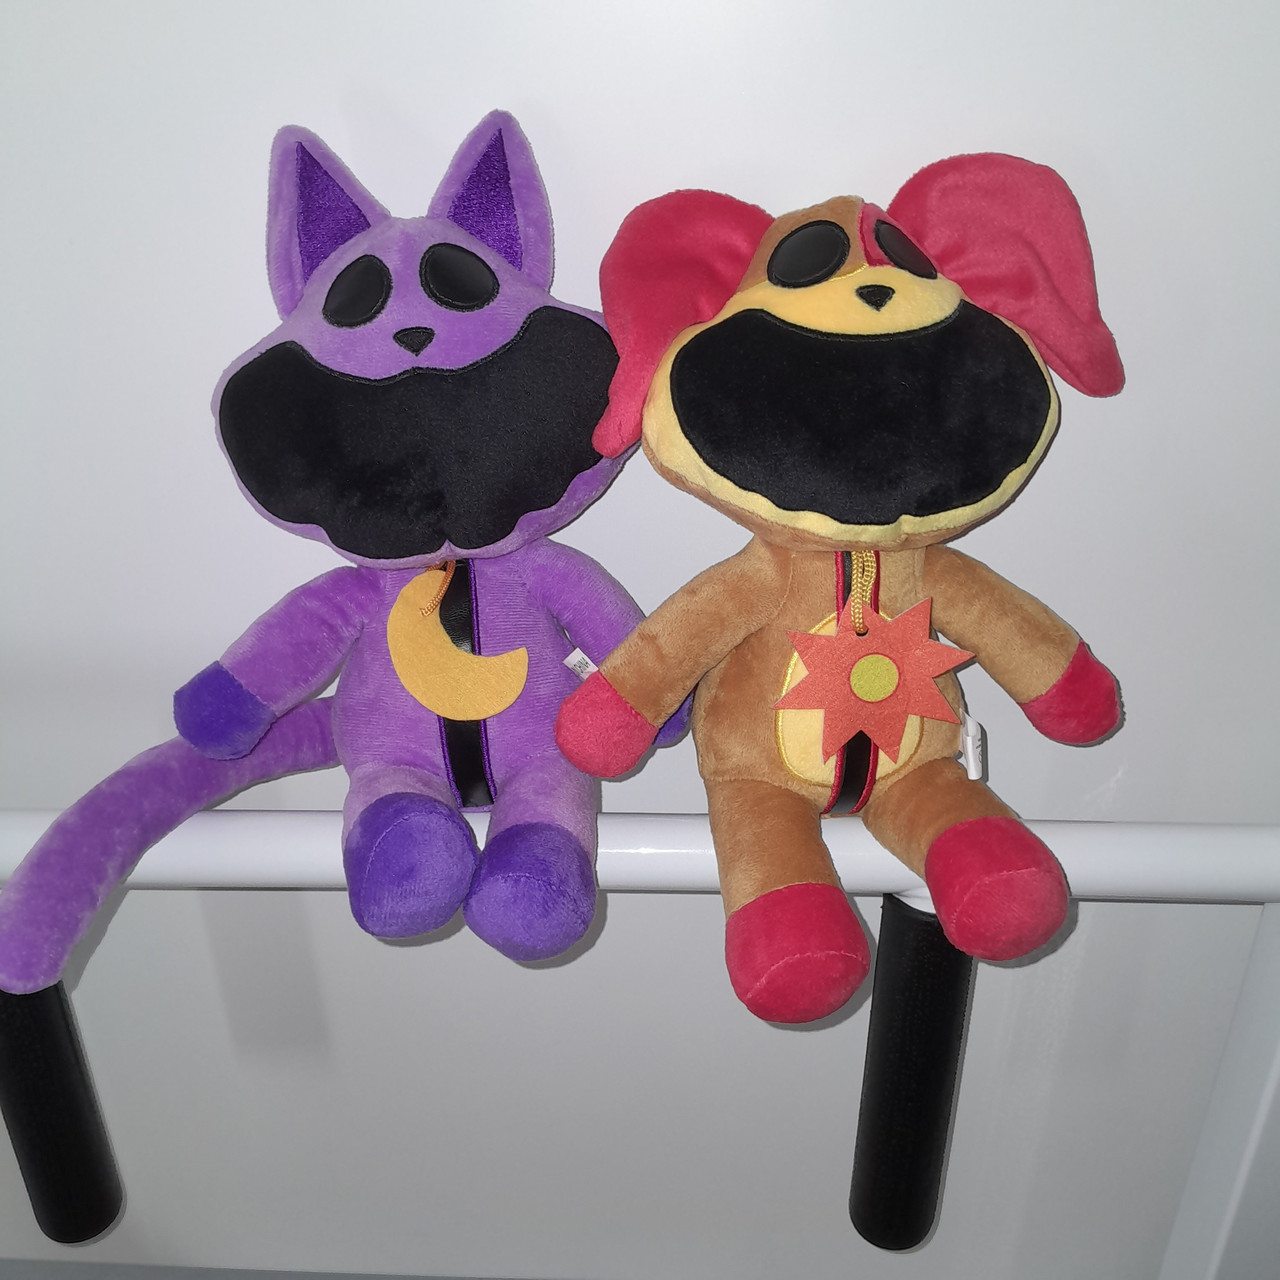 М'які іграшки усміхнені звірі Кіт Дрема фіолетовий Поппі Плей тайм Smiling Critters Собачка ДогДей DogDay